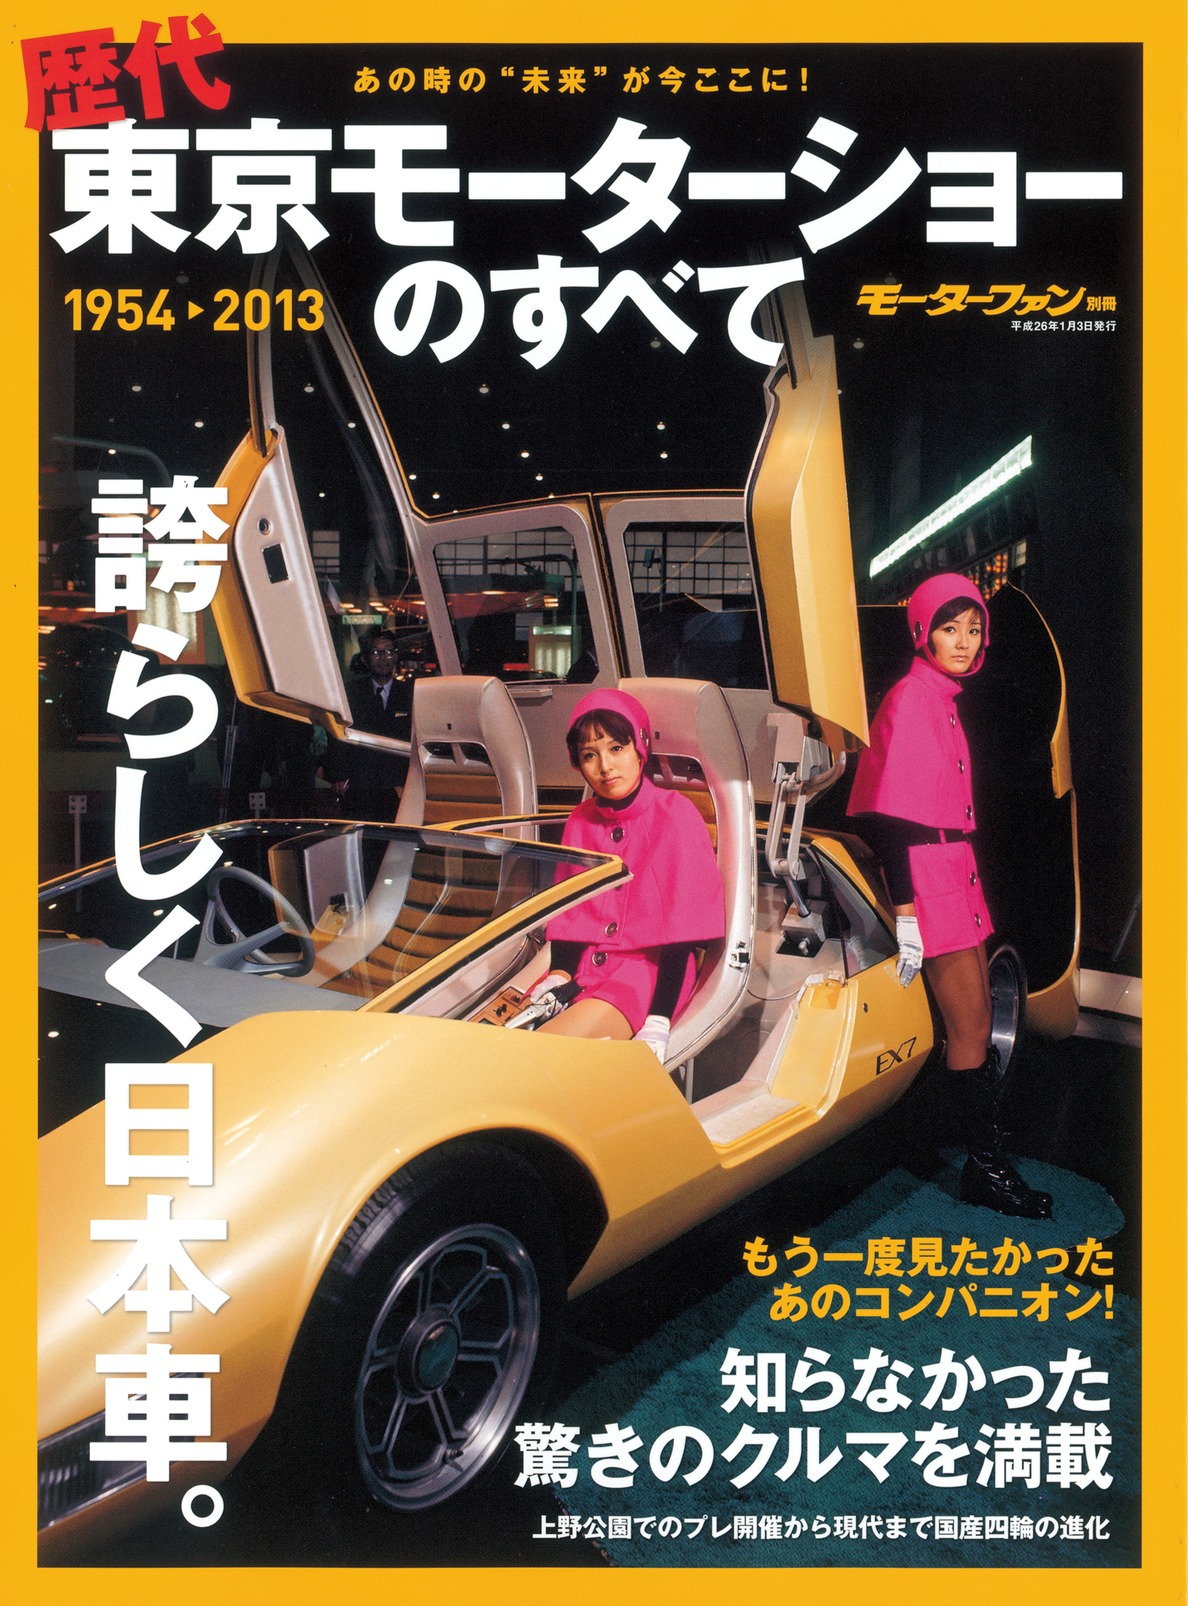 東京モーターショー2003 カタログ　ガイドブック